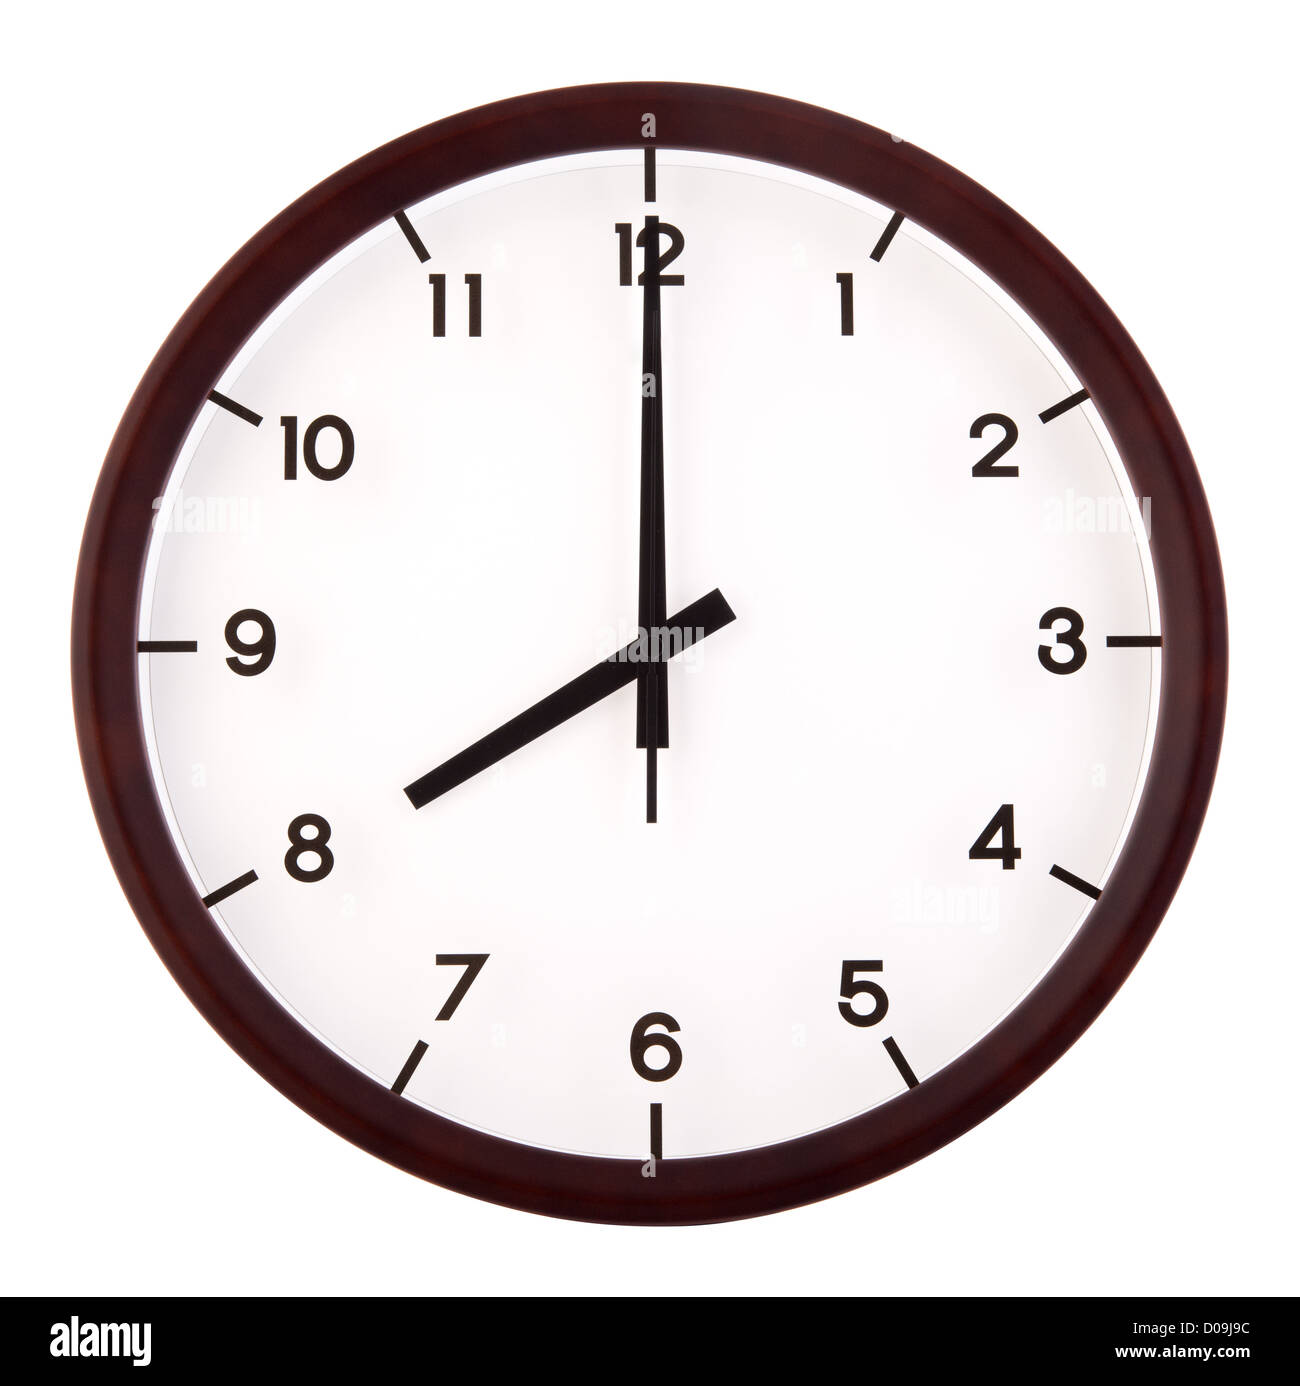 Classic orologio analogico rivolto alle ore 8, isolato su sfondo bianco  Foto stock - Alamy